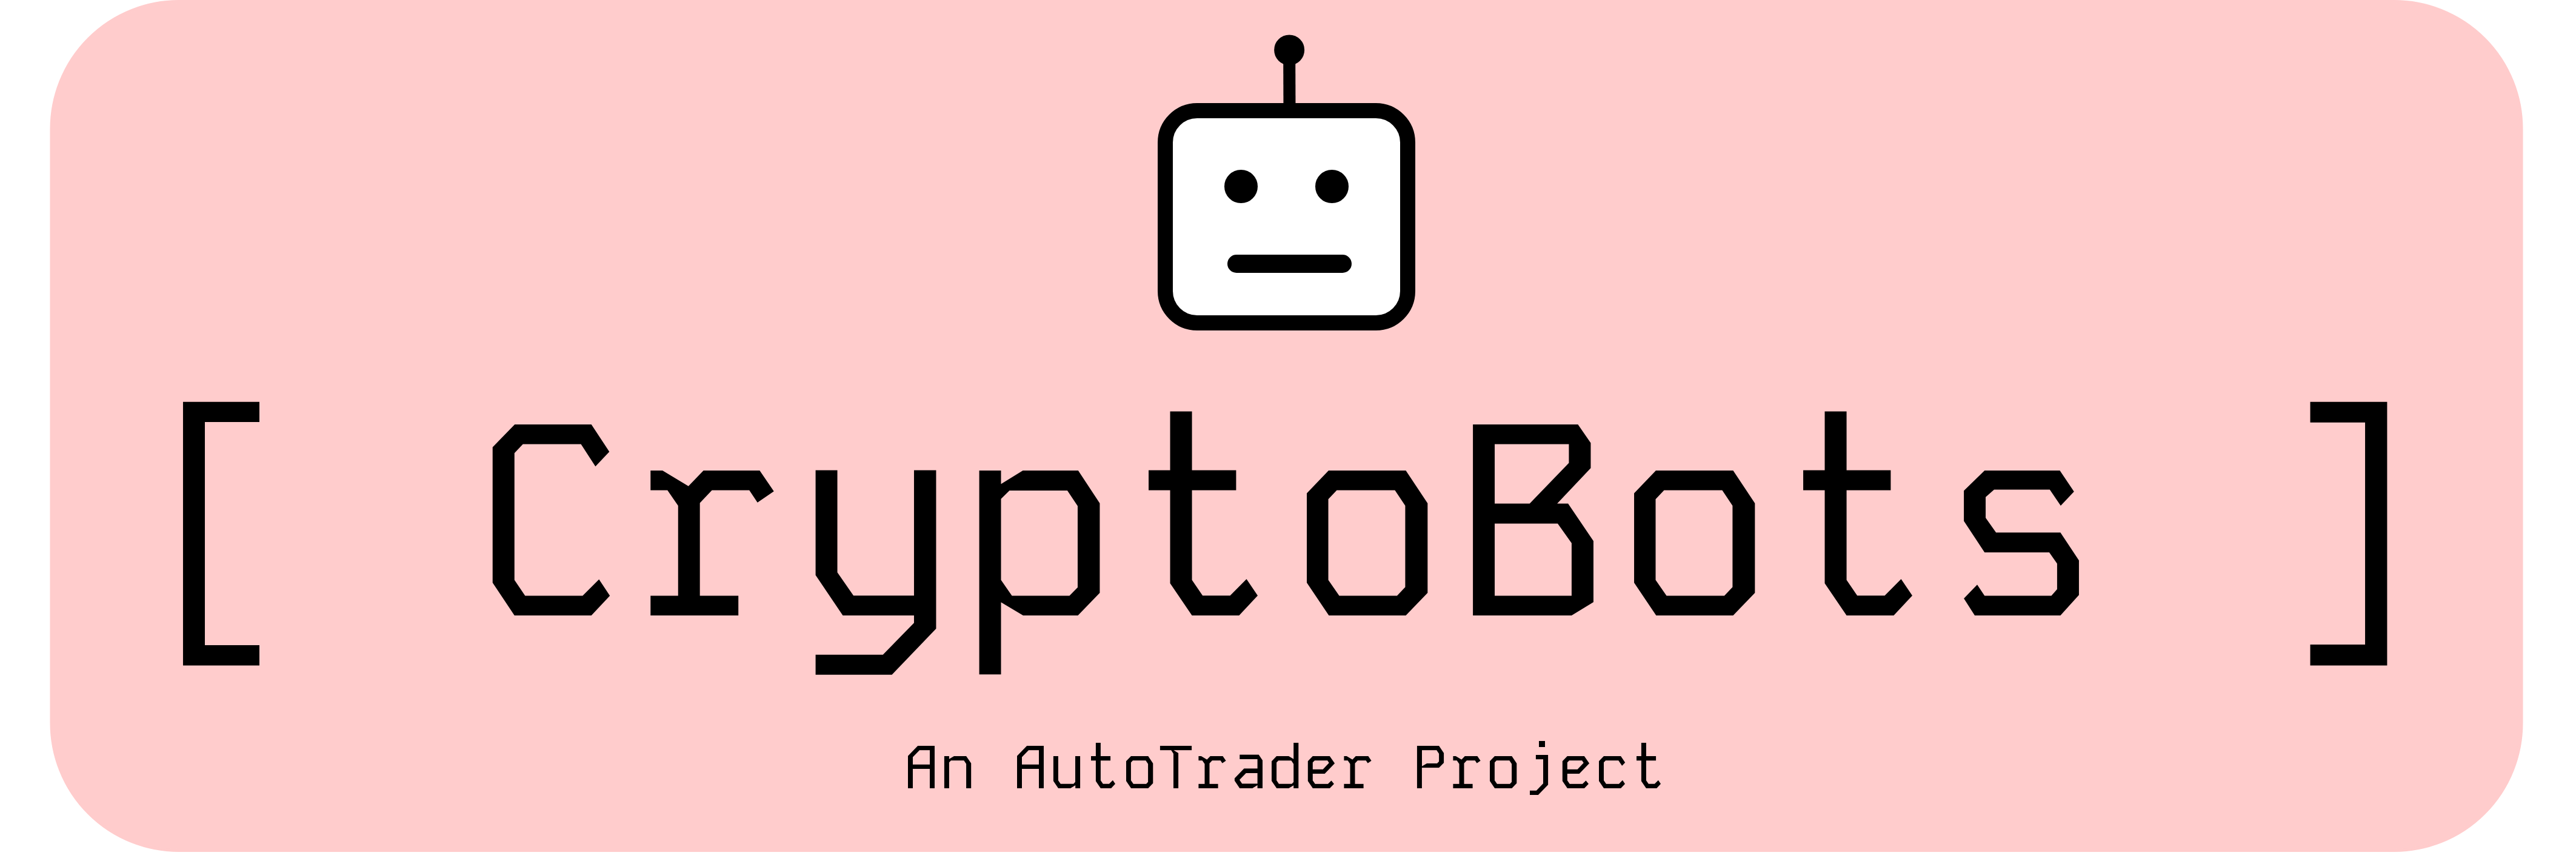 CryptoBots logo